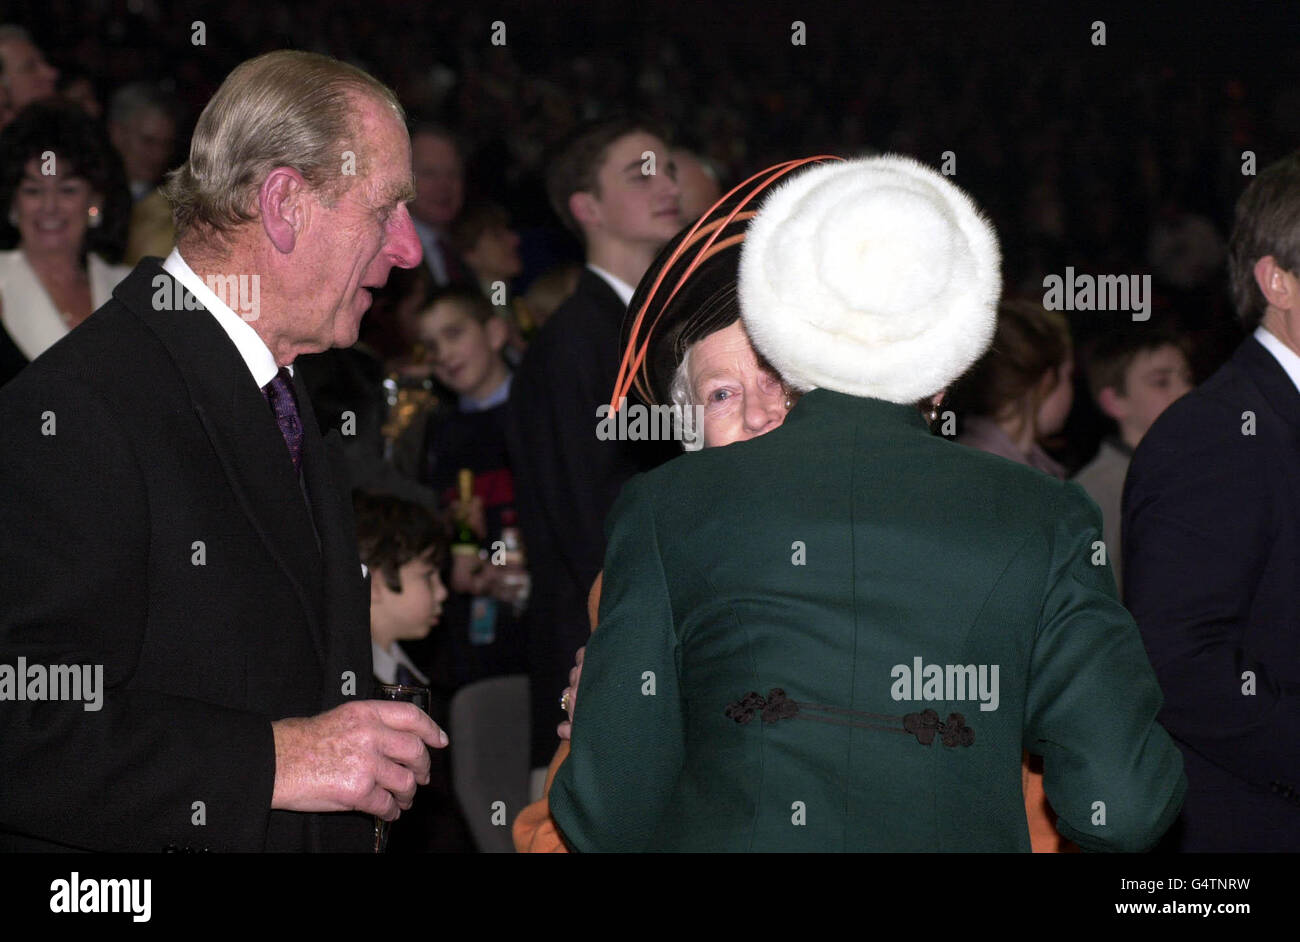 La Reine reçoit un baiser de sa fille la Princesse Royale alors que le duc d'Édimbourg regarde pendant les célébrations de minuit au Millennium Dome de Greenwich, dans le sud-est de Londres.* la reine Elizabeth II de Grande-Bretagne et son mari sont parmi le public de la Saint-Sylvestre pour l'ouverture du Dôme, qui sera la pièce maîtresse des célébrations du millénaire du Royaume-Uni.Photo PA : Fiona Hanson *EDI Banque D'Images